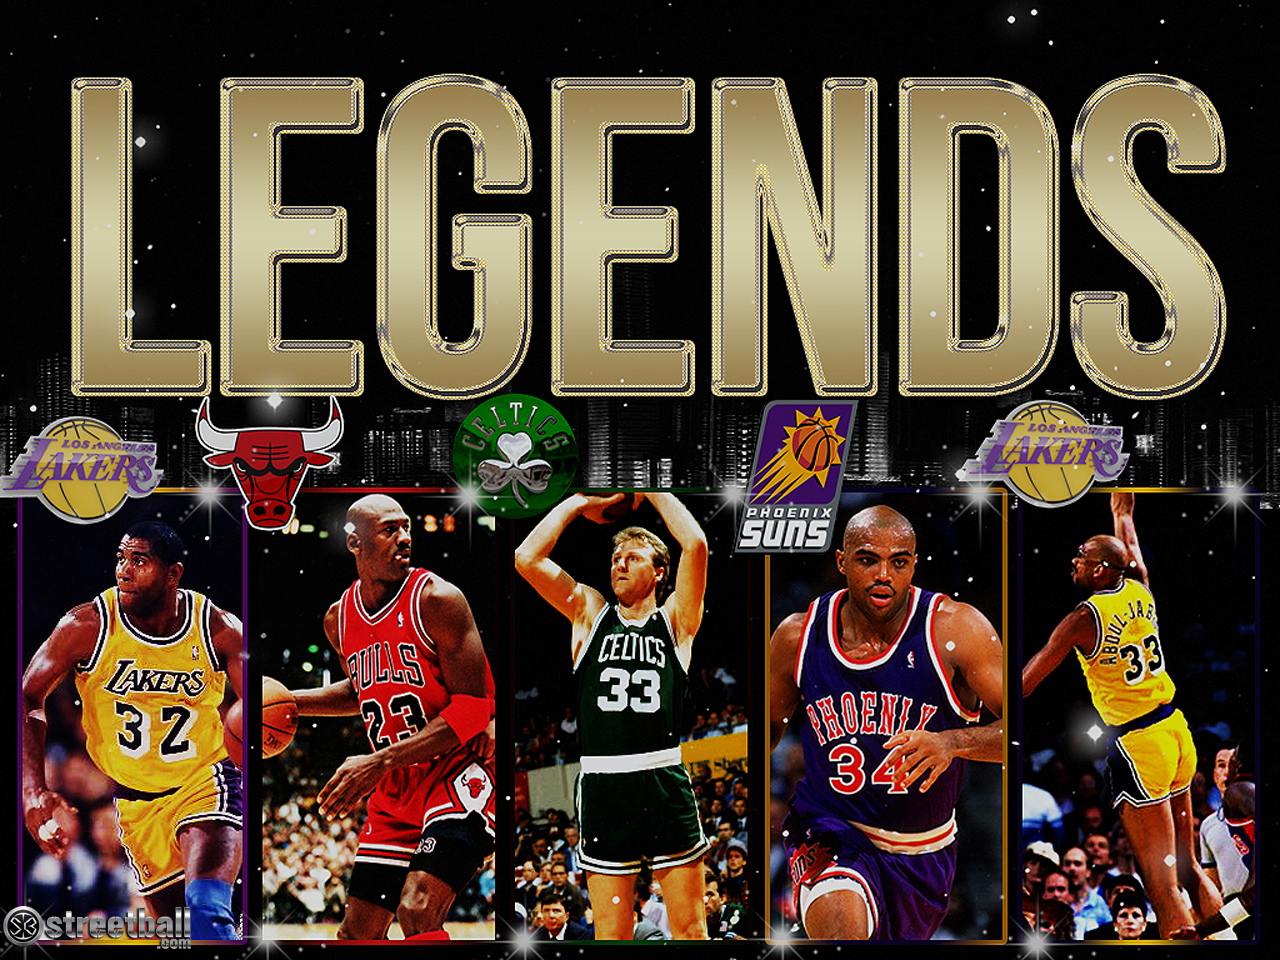 Charles Barkley wallpaper. Charles Barkley Legends Basketball Wallpaper